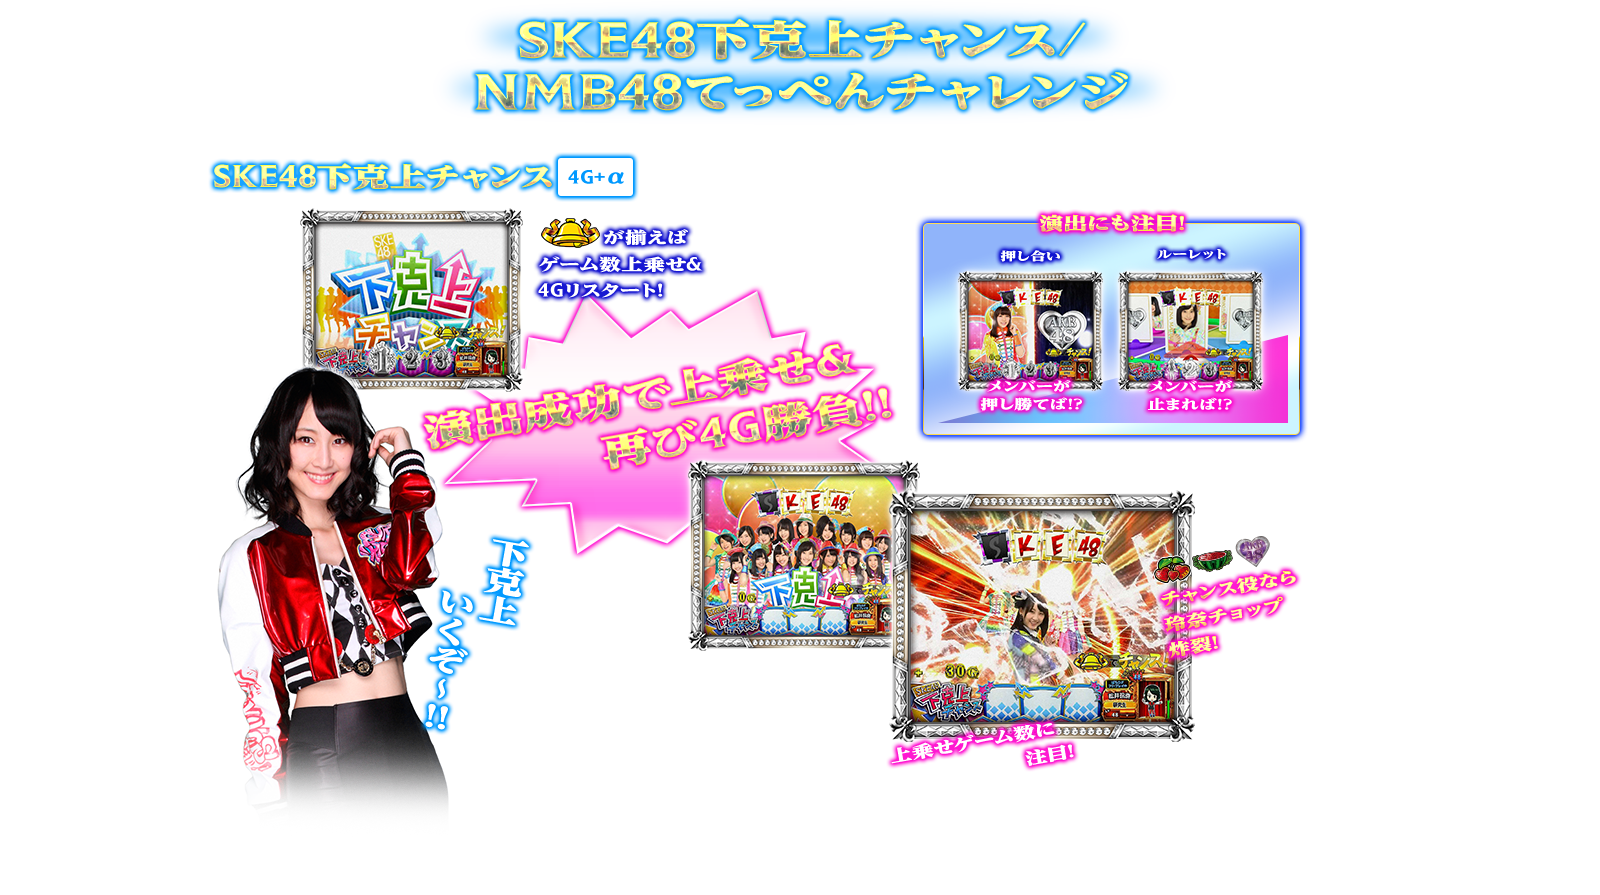 ぱちスロAKB48 バラの儀式の演出紹介。神曲RUSHのSKE48下克上チャンス/NMB48てっぺんチャレンジです。AKB48ファン、スロット初心者、ヘビーユーザーまで誰もが楽しめるDDスペックで登場!!